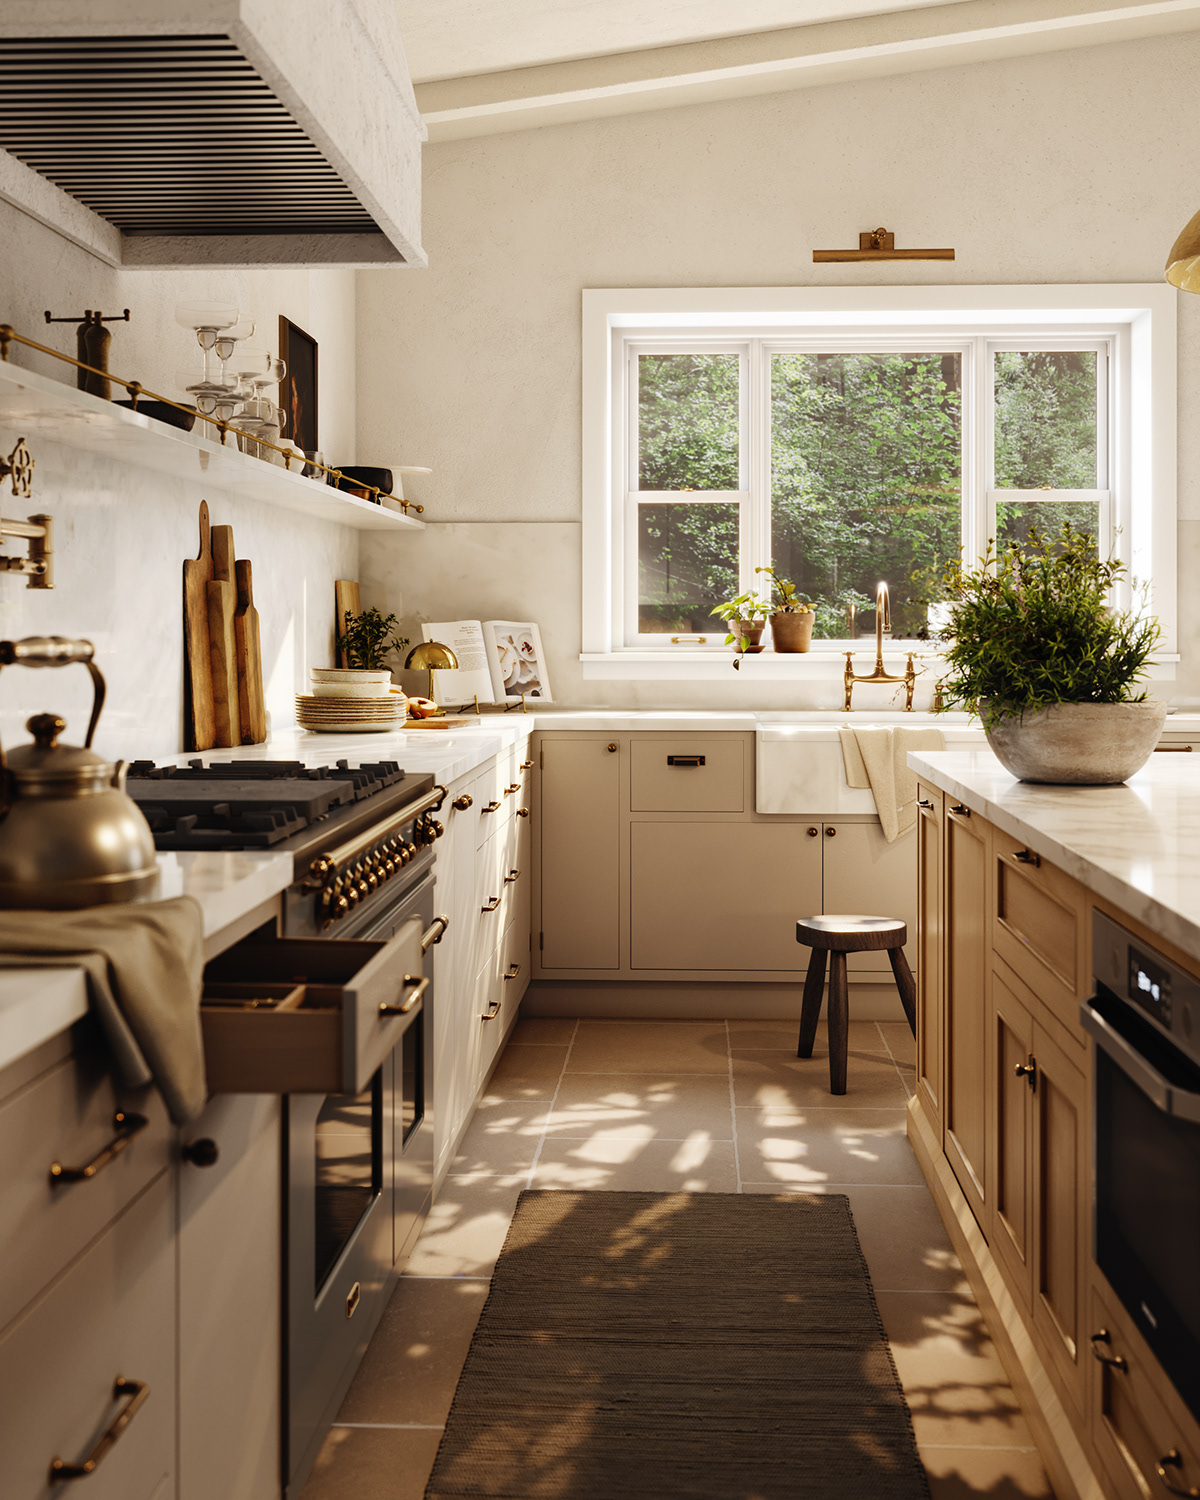 3D architecture interior design  design visualization kitchen kitchen design Interior CGI Render